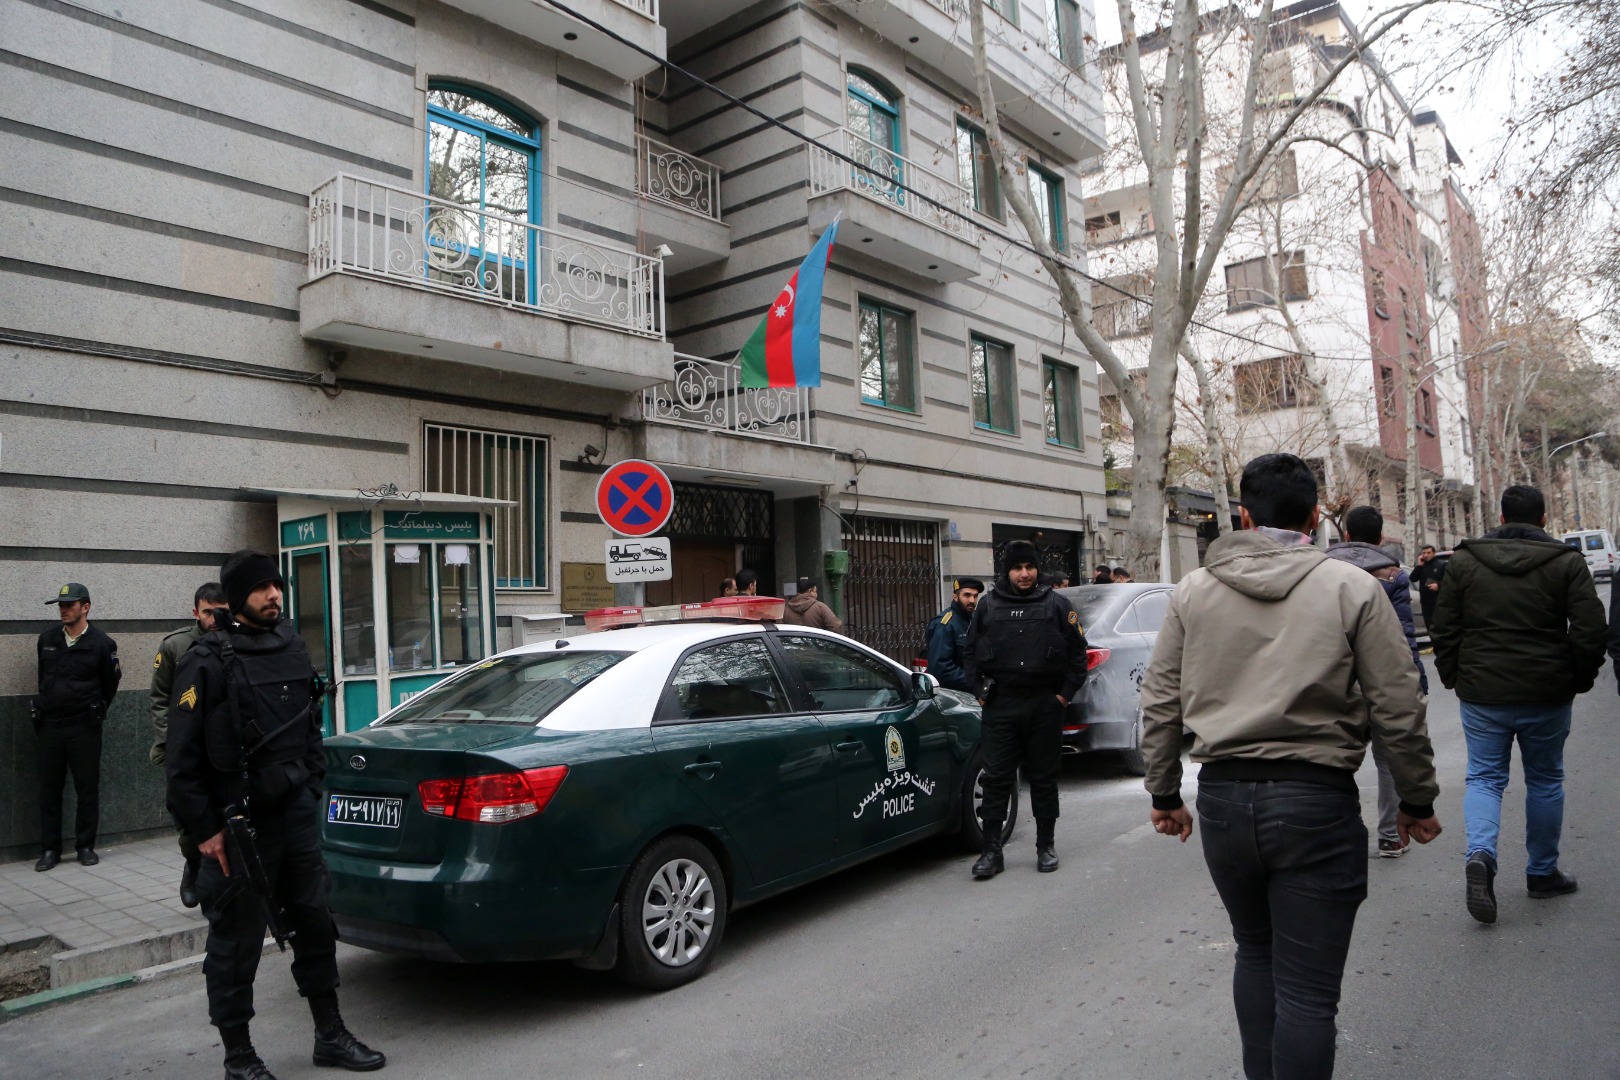 Azerbaycan Büyükelçiliği saldırısı sonrasında flaş görev değişikliği!